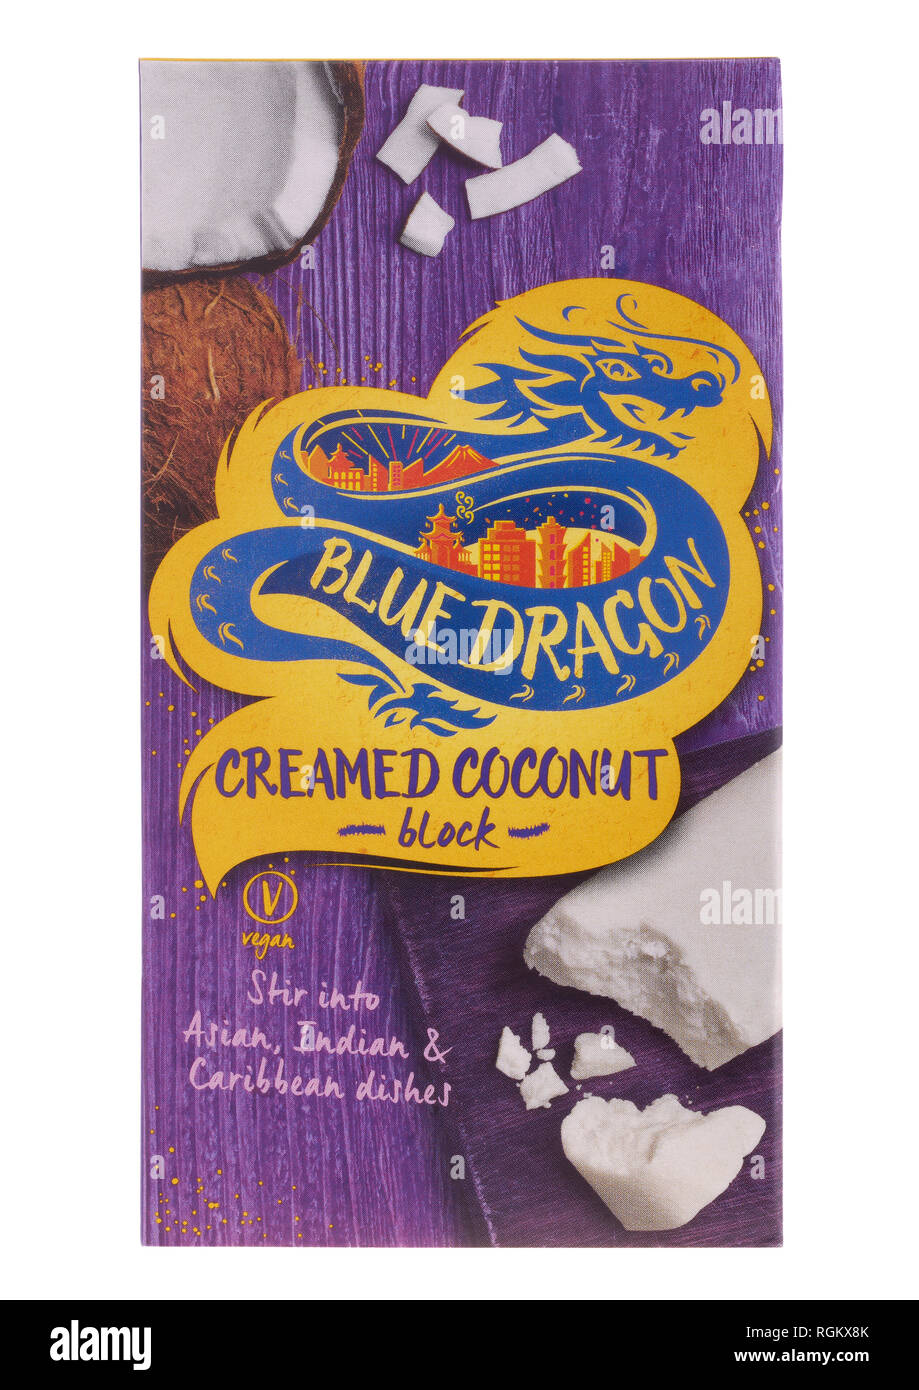 Paquete de crema de coco bloque dragón azul sobre fondo blanco. Foto de stock